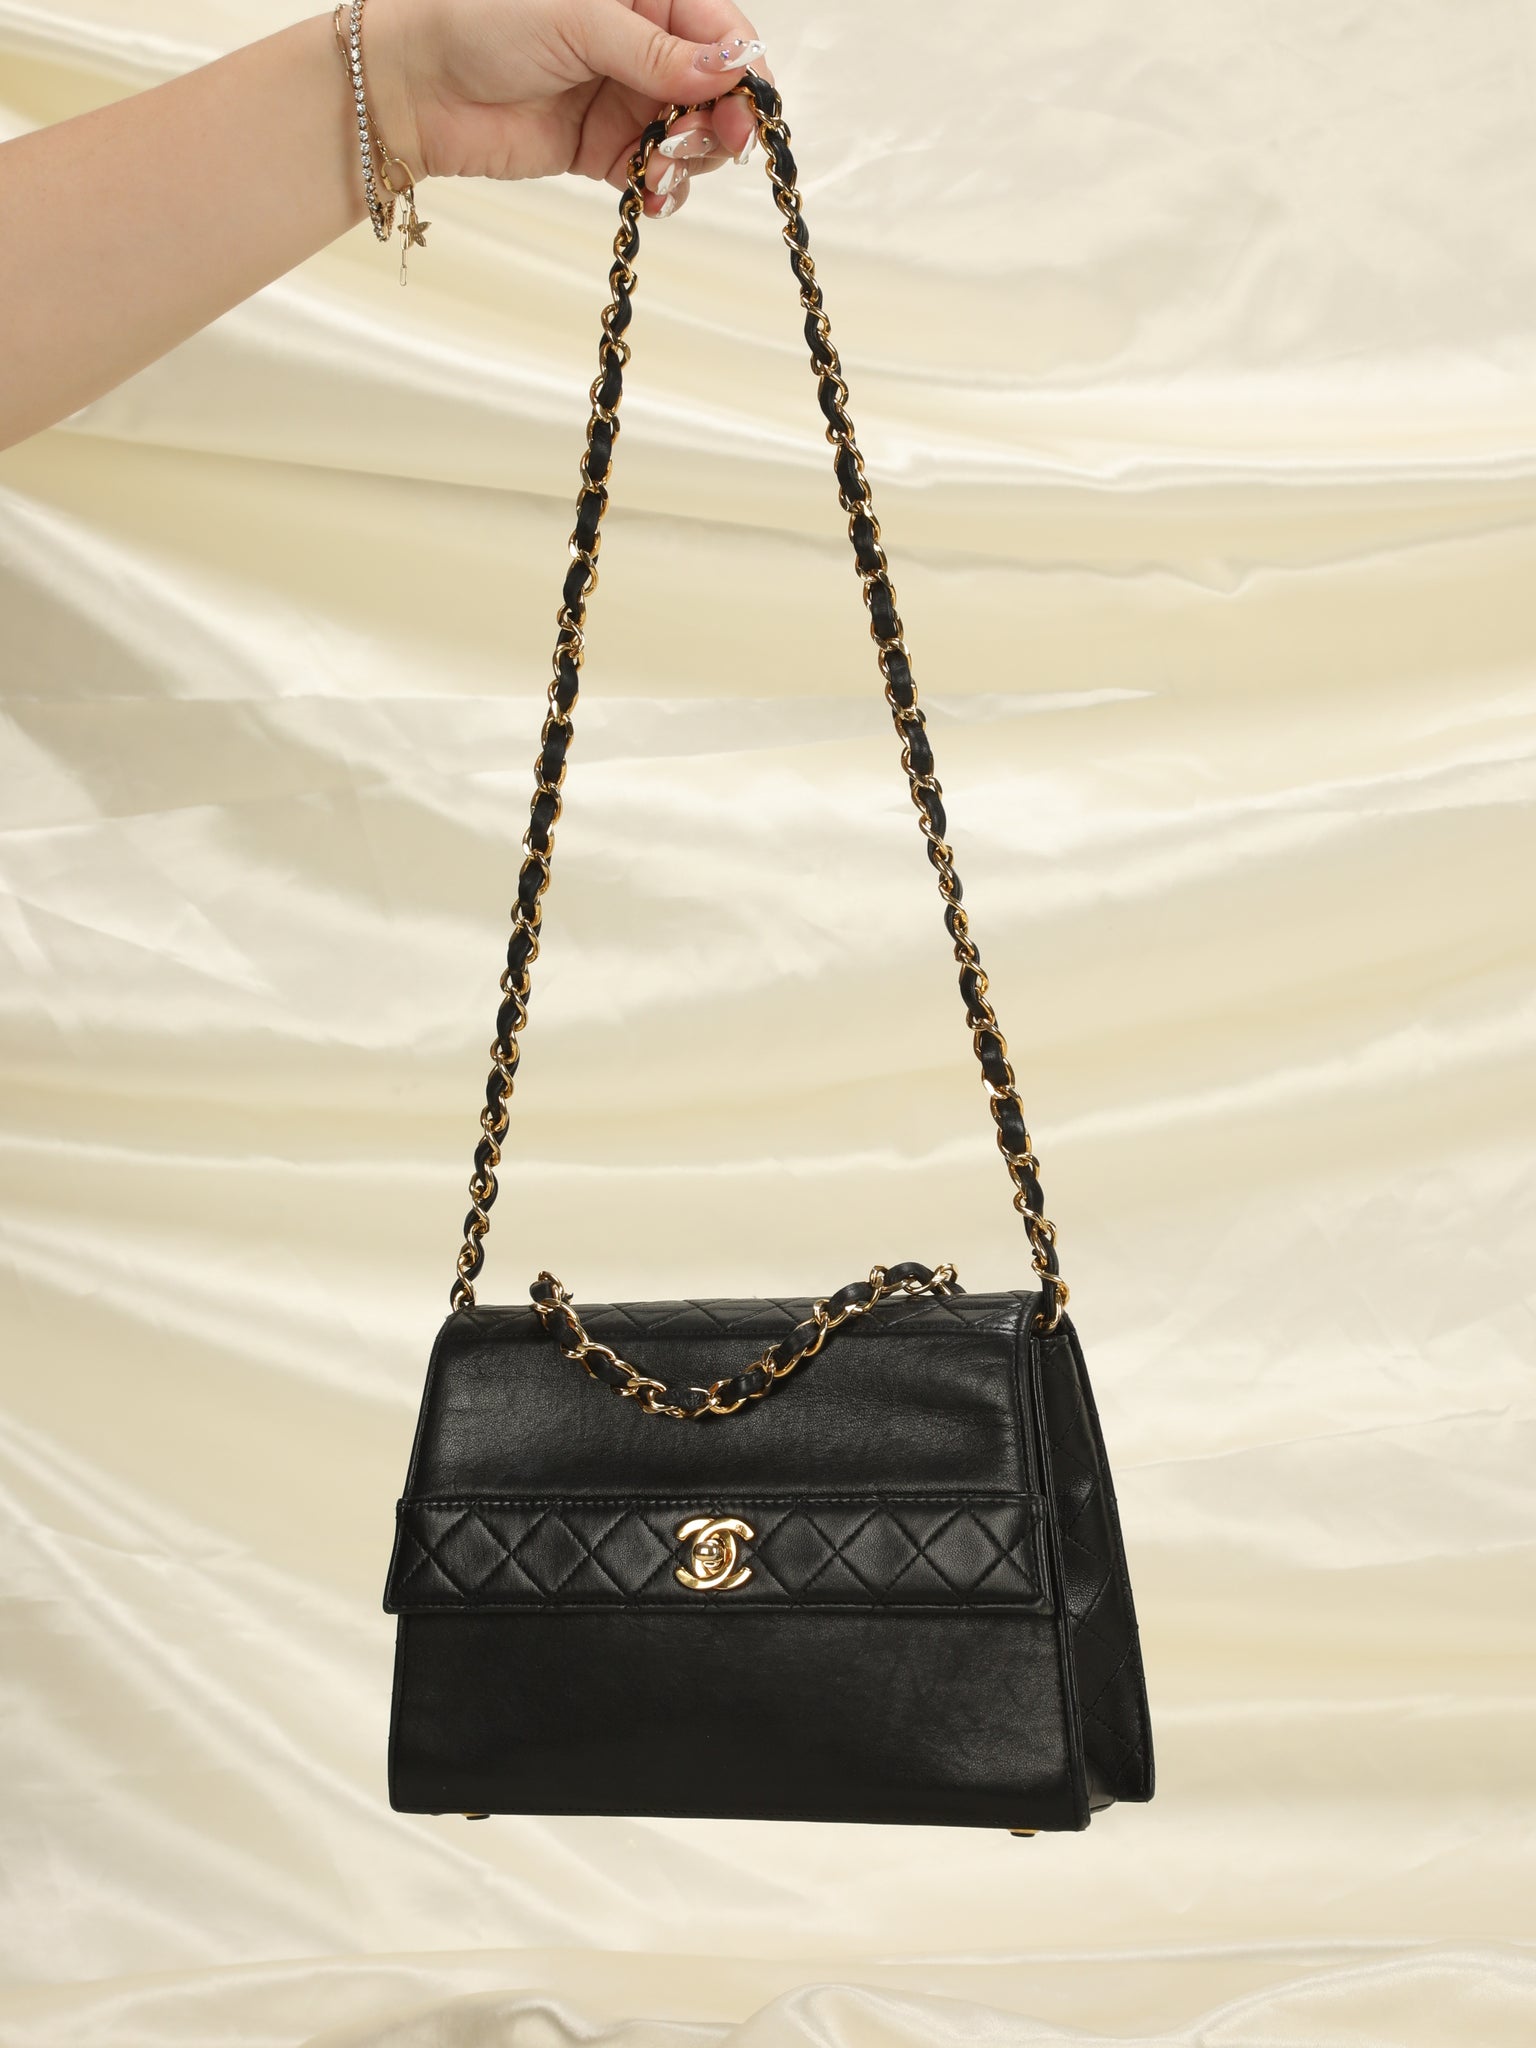 Rare Chanel Trapezoid Mini Bag